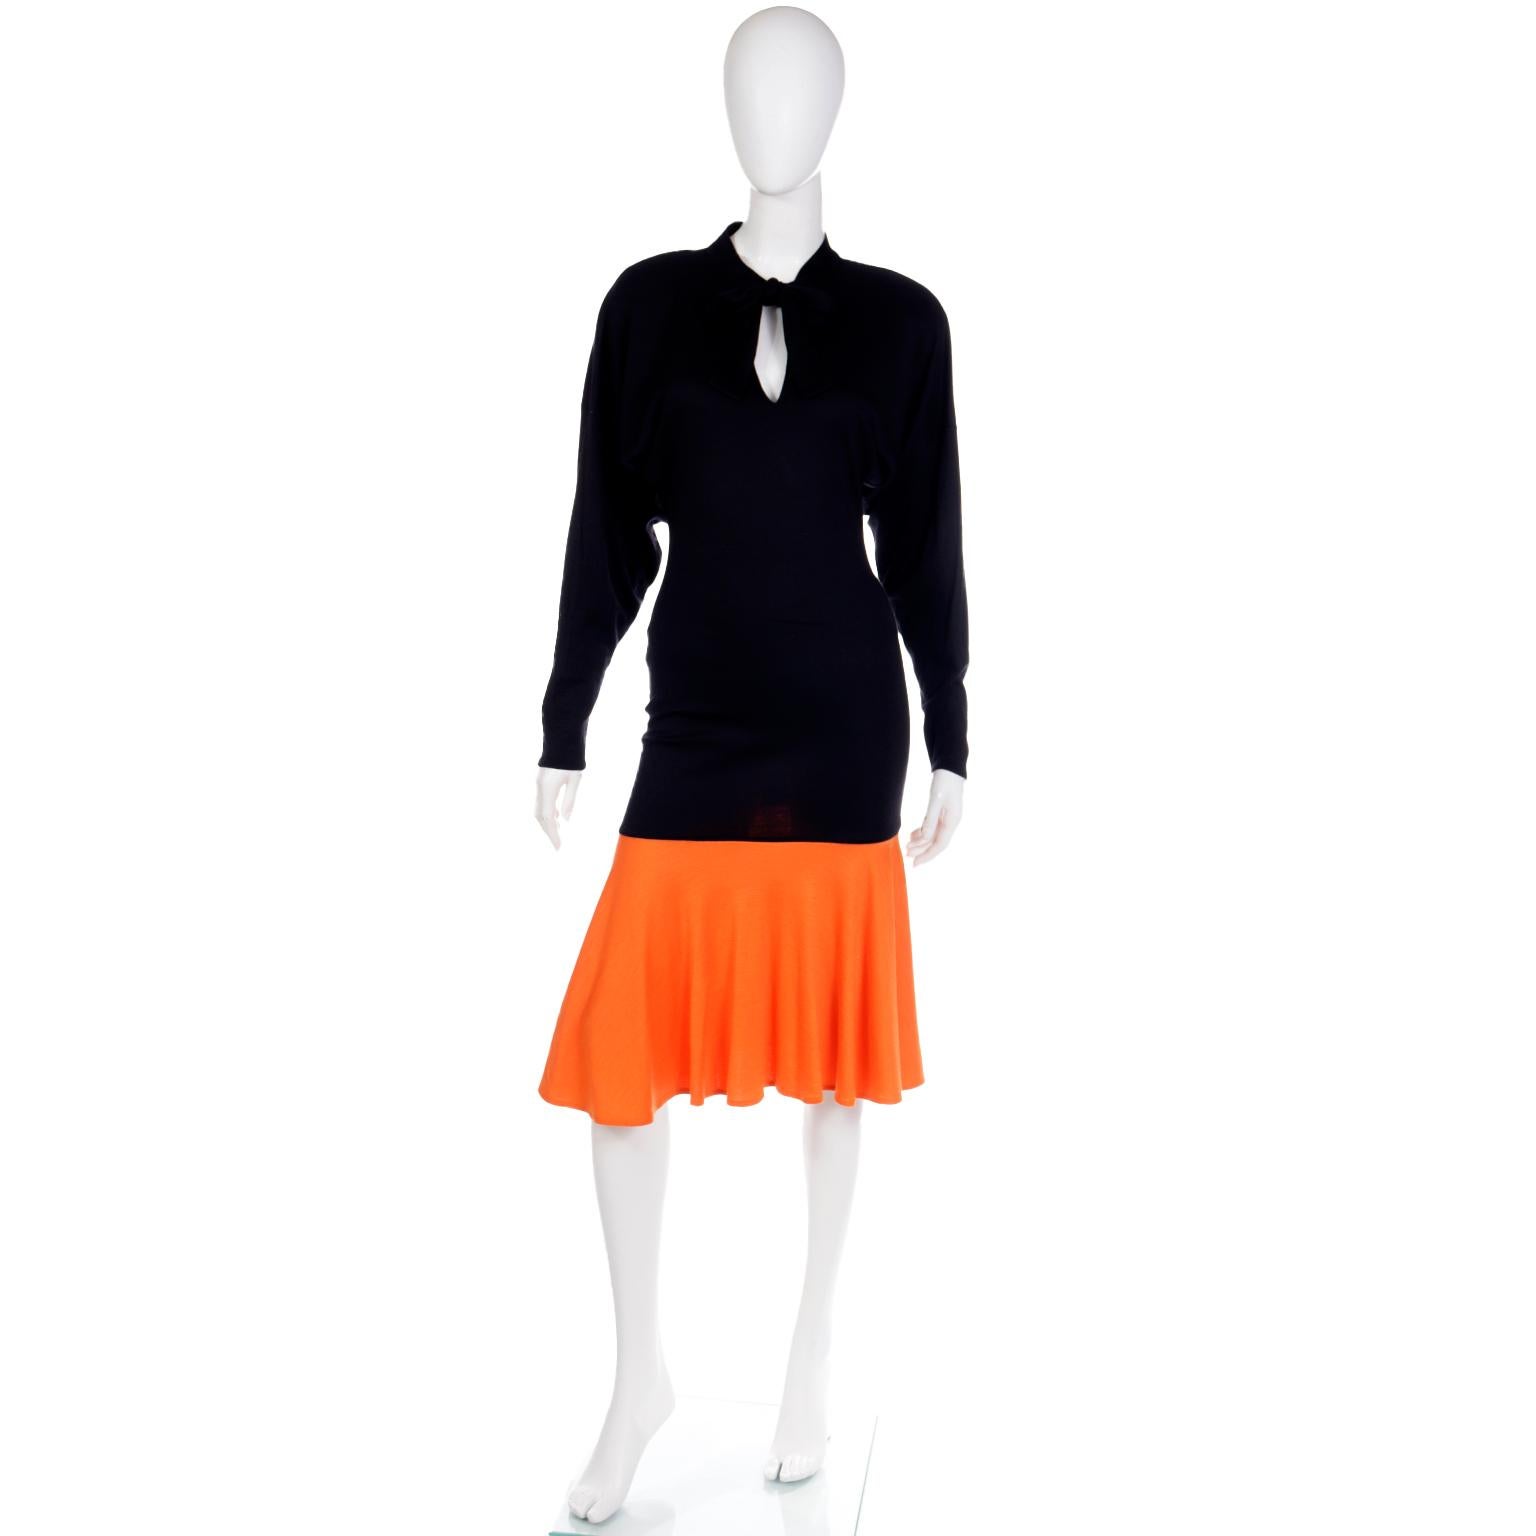 Rare Patrick Kelly Paris F/W 1988 Black & Orange Color Block Vintage Dress For Sale 9